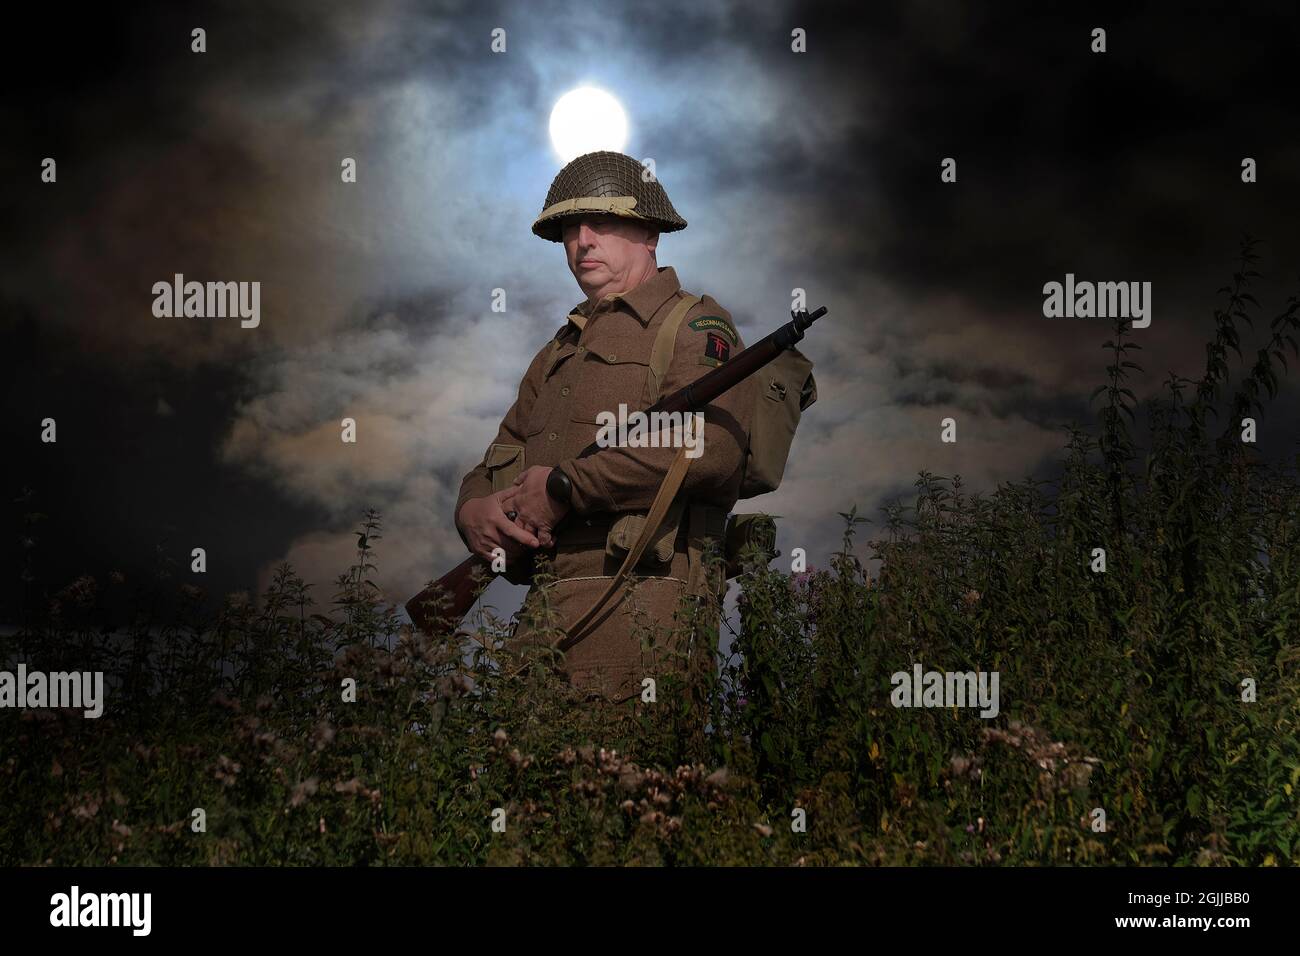 Enactors vestito in seconda guerra mondiale British uniforme scena battaglia e stile di vita scene. Foto Stock